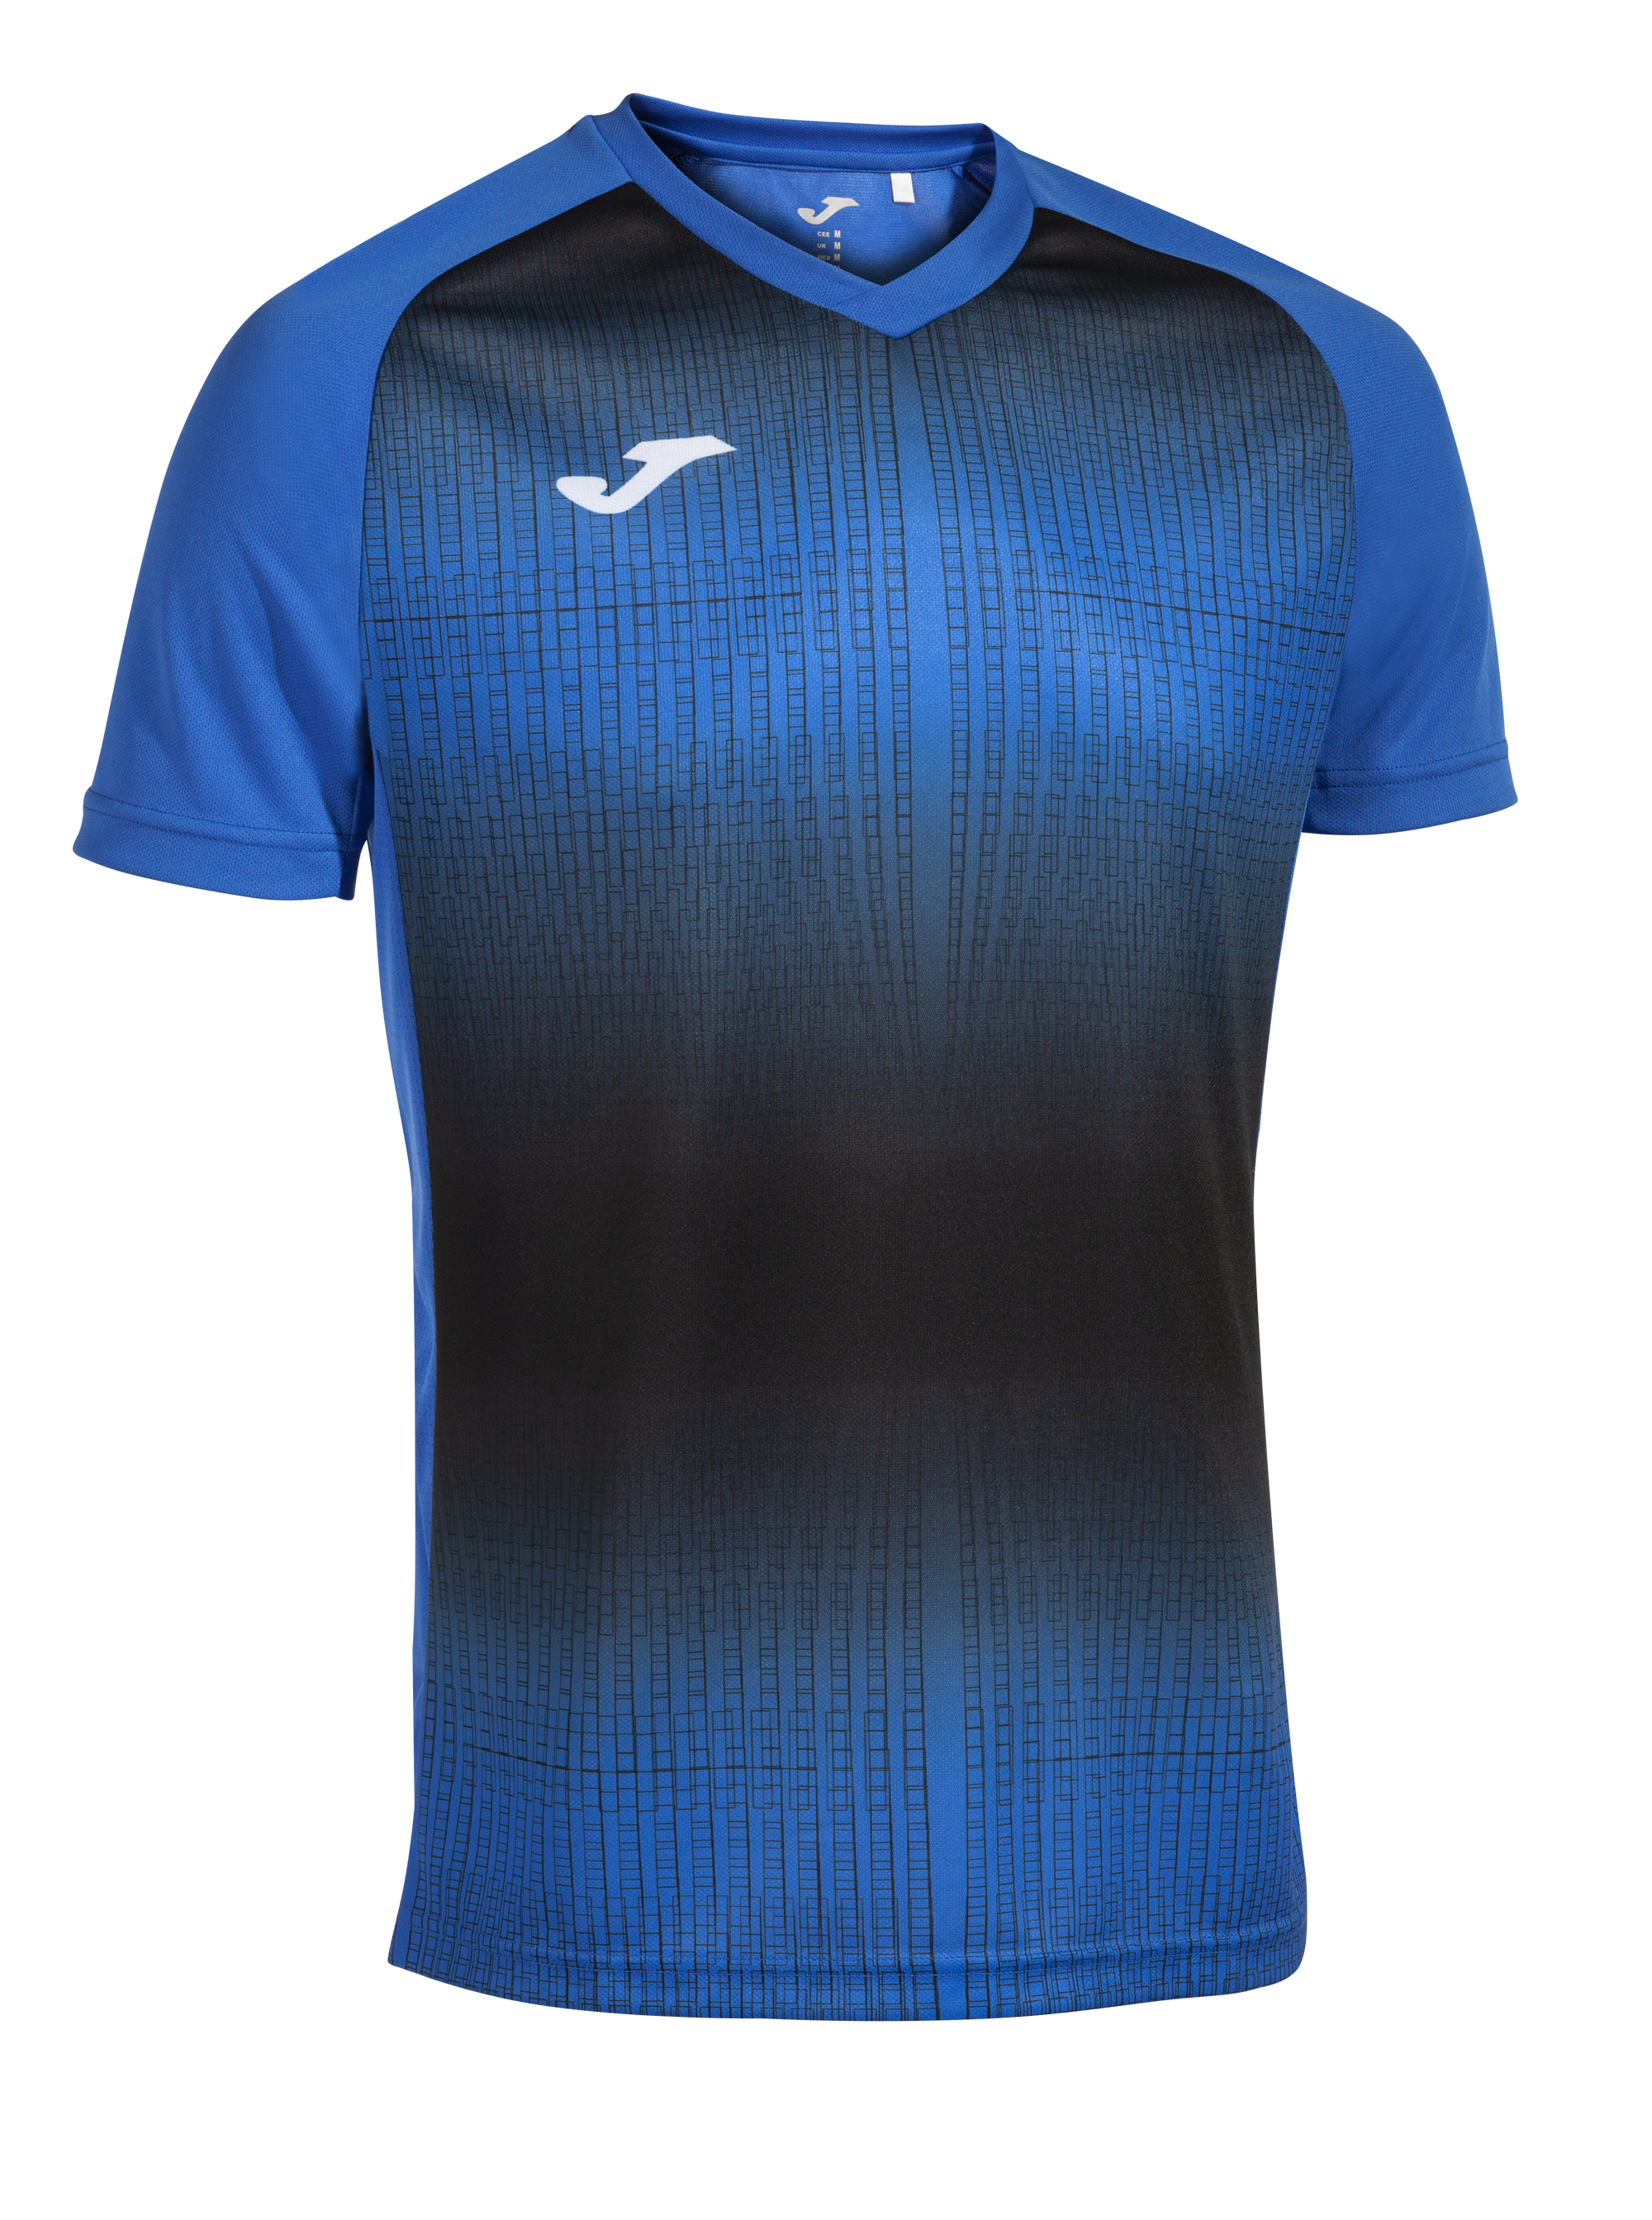 Joma Tiger V Short Sleeve T-Shirt - Royal Blue/Black